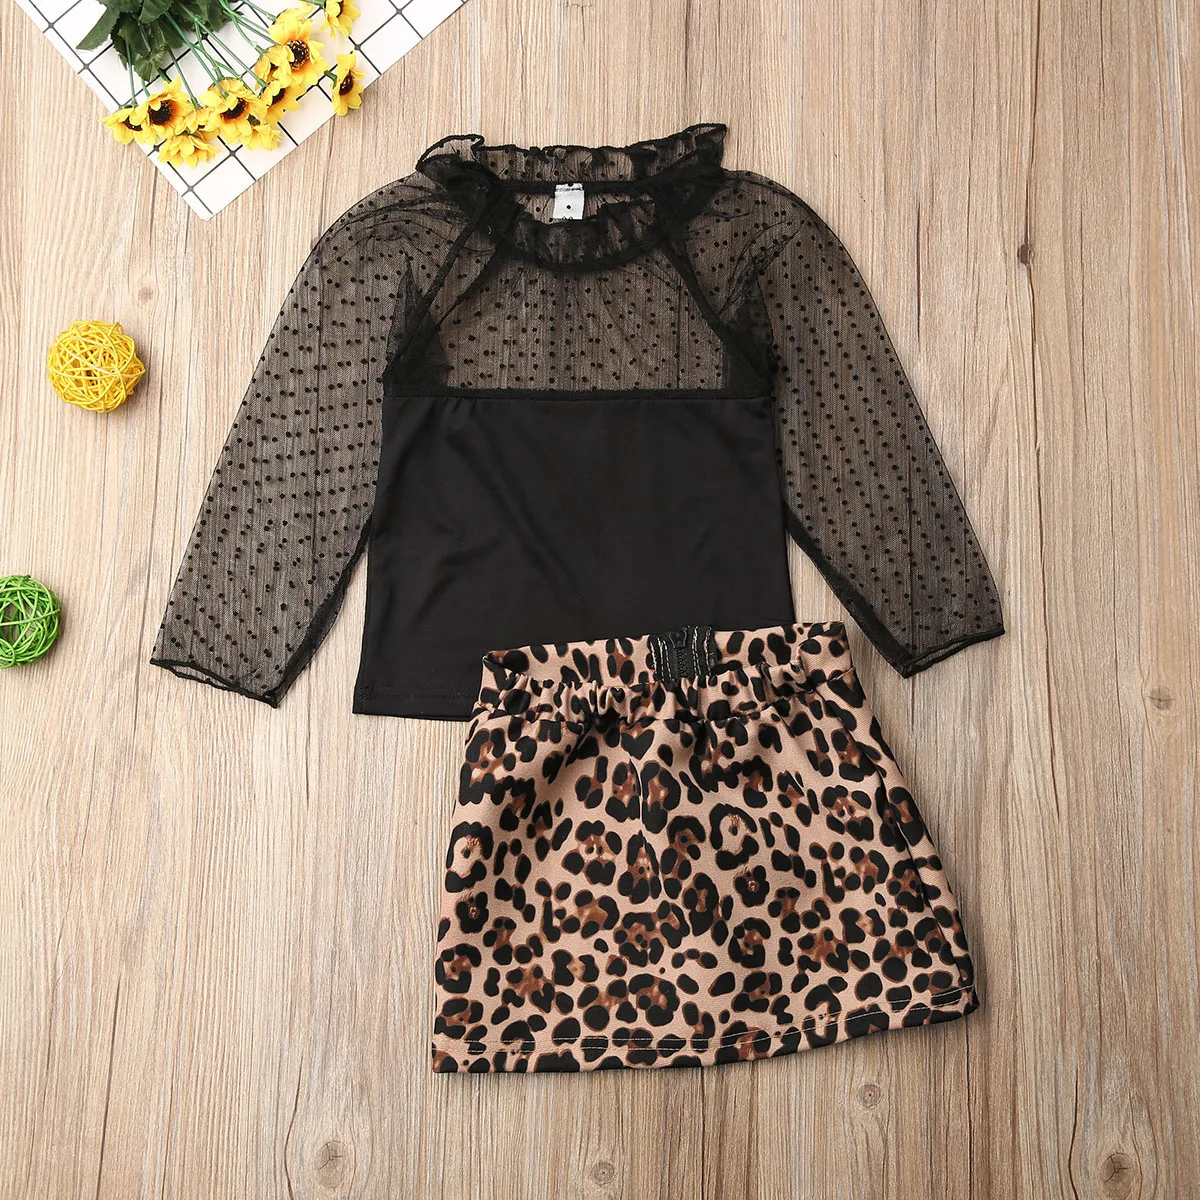 Новые летние комплекты одежды для маленьких девочек, черные топы с открытыми плечами+ леопардовая короткая юбка-футляр комплект одежды для маленьких девочек